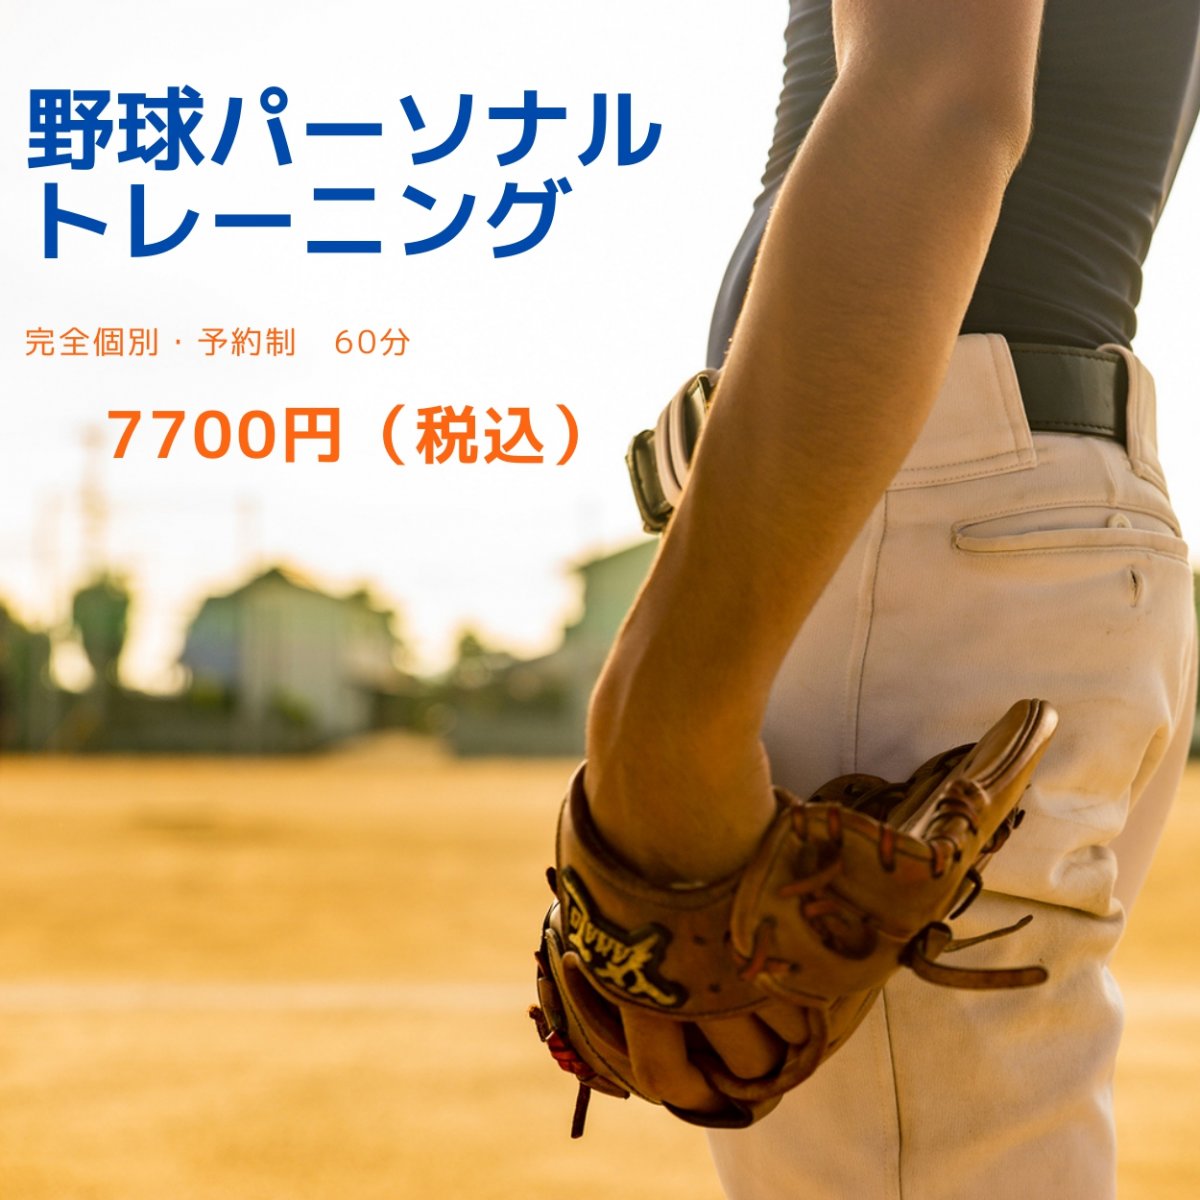 【個別指導】野球パーソナルトレーニング